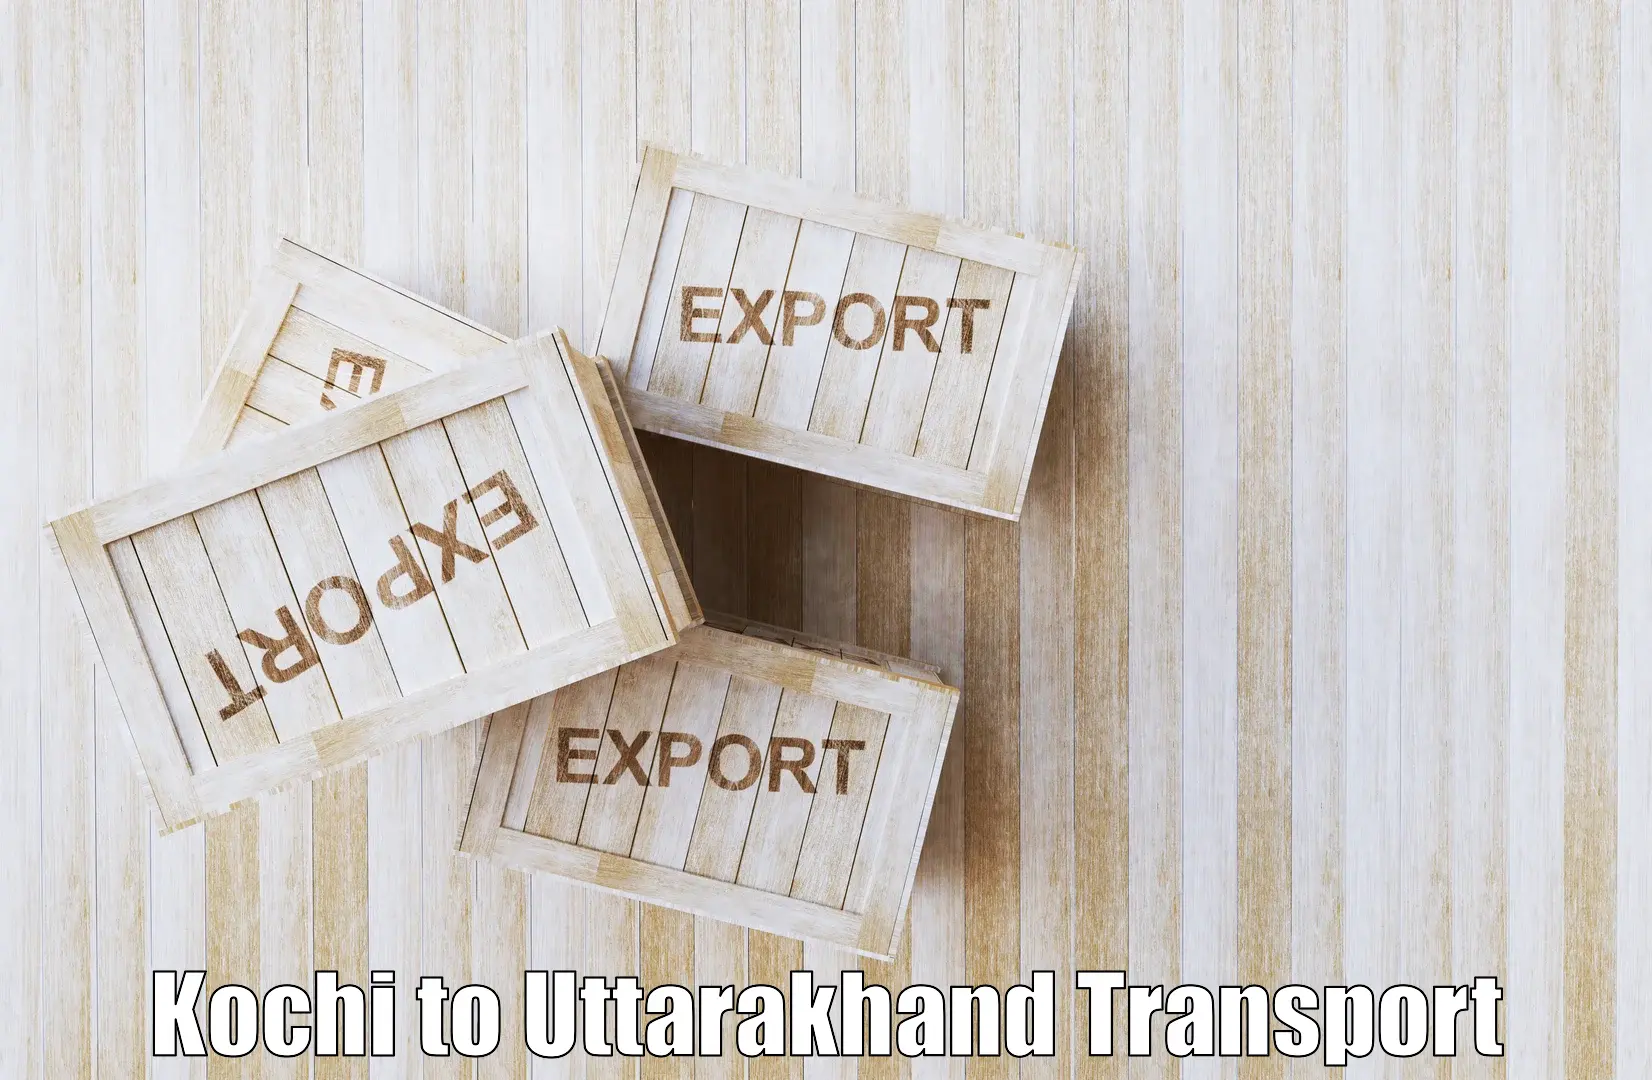 Commercial transport service Kochi to Uttarakhand